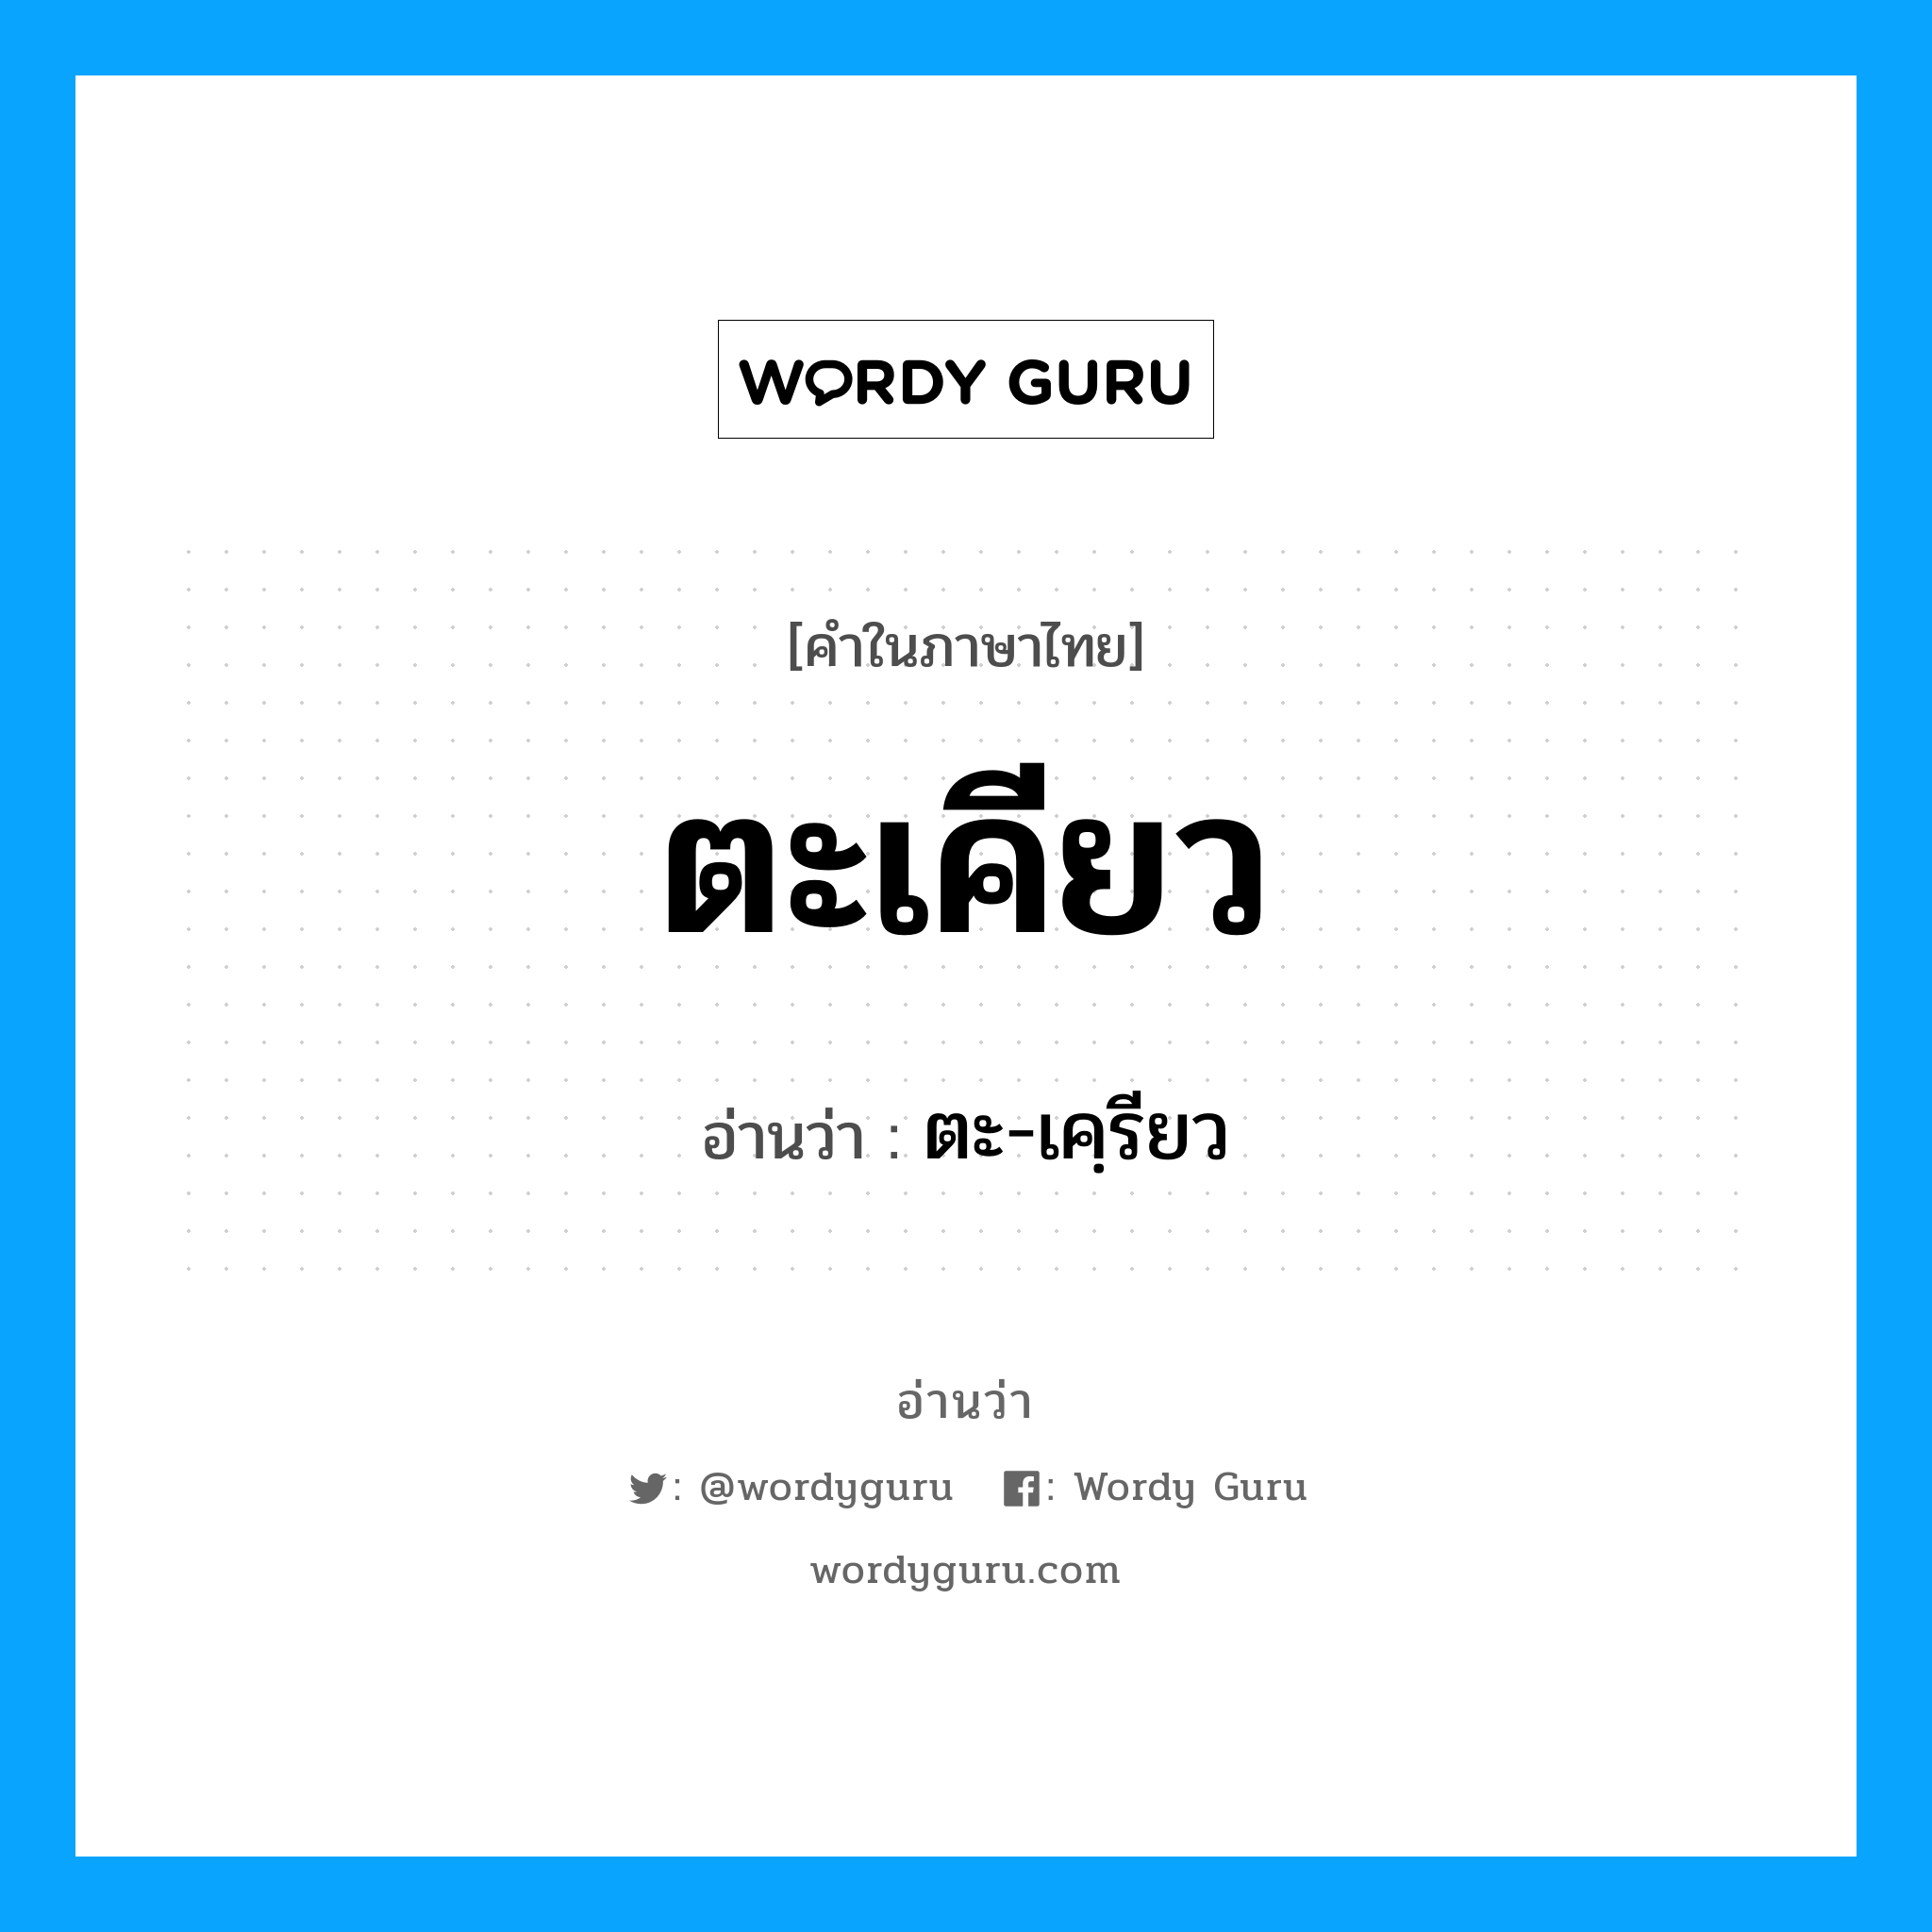 ตะ-เคฺรียว เป็นคำอ่านของคำไหน?, คำในภาษาไทย ตะ-เคฺรียว อ่านว่า ตะเคียว